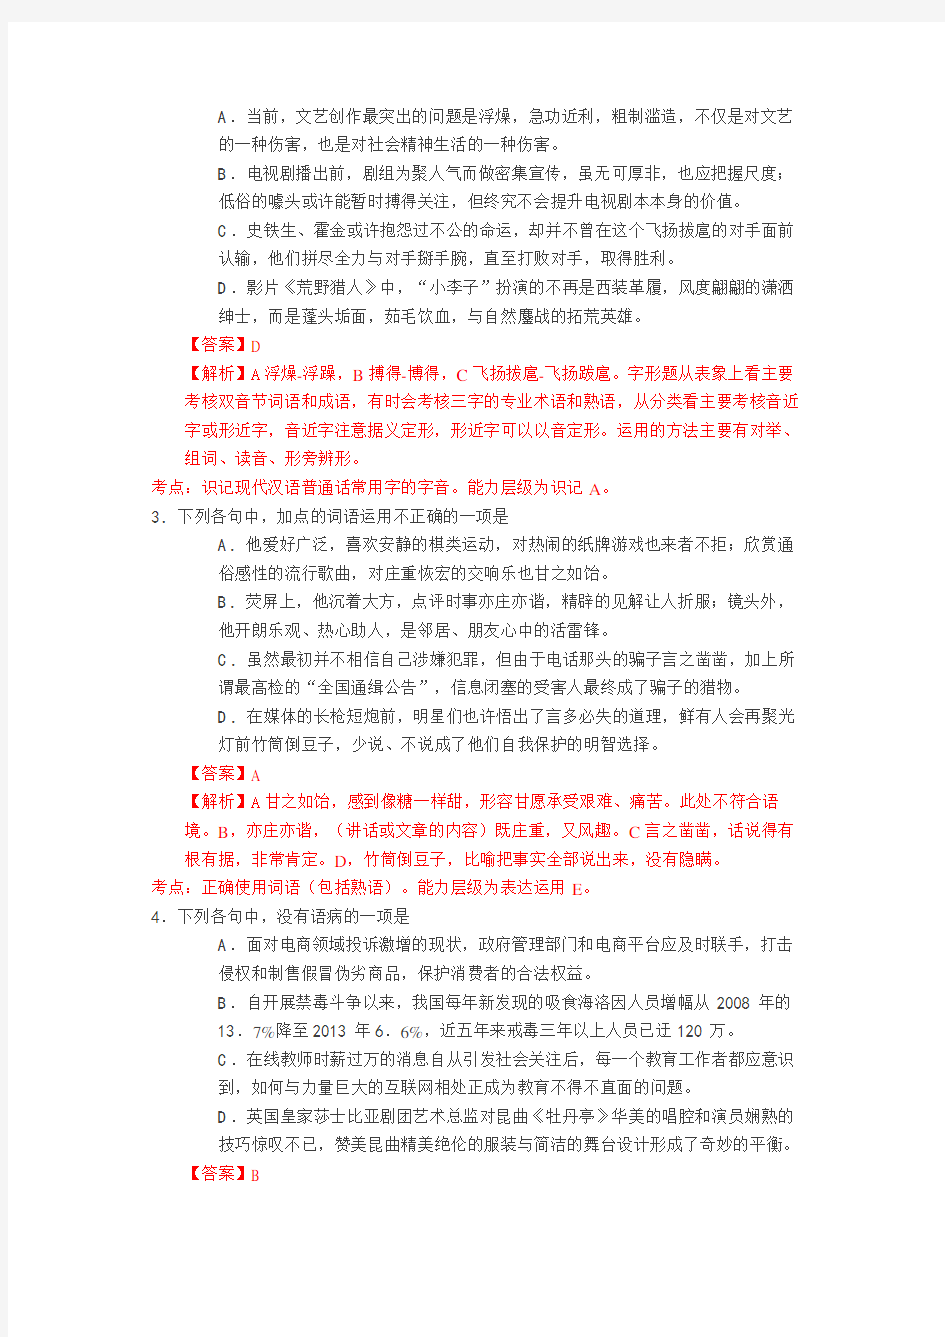 2016年浙江高考语文试卷最新点评与试题详细解析